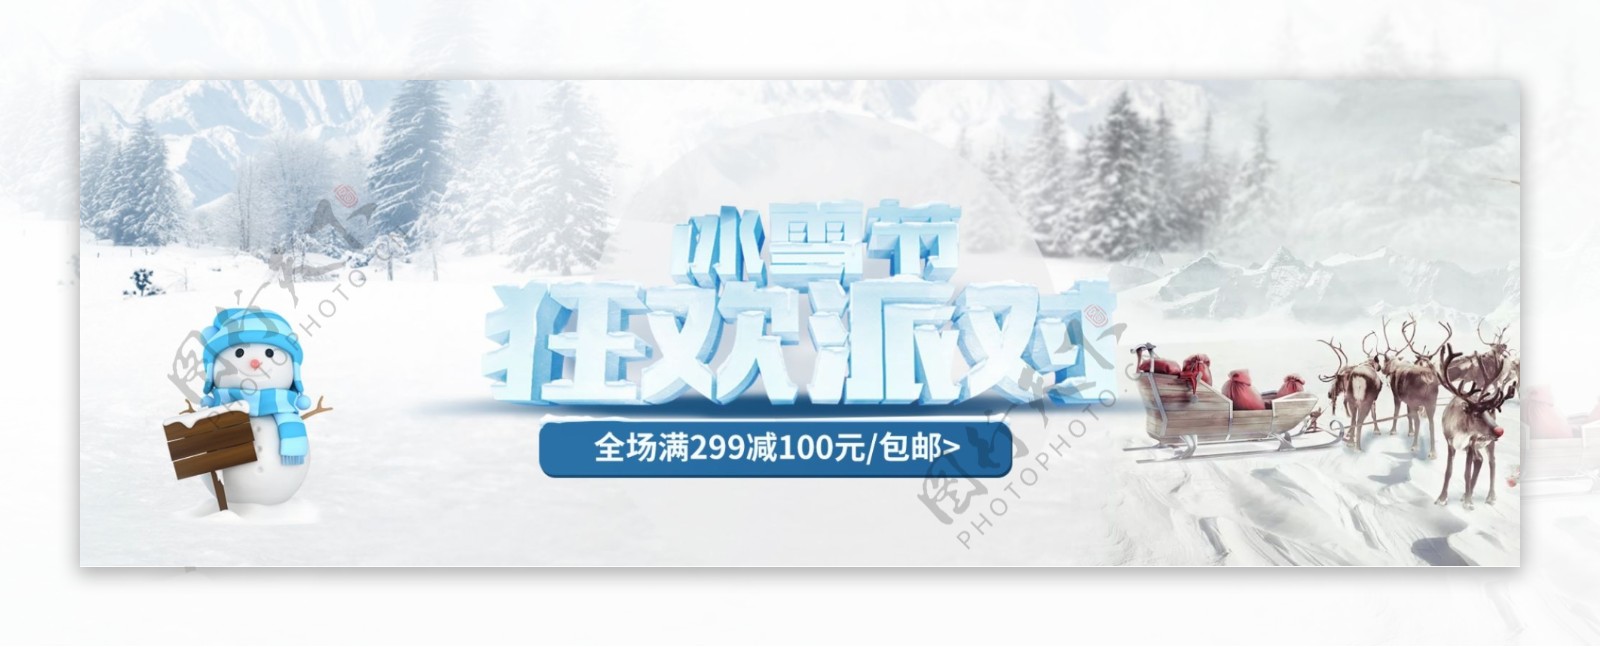 淘宝天猫冬季冰雪节全屏海报设计模板